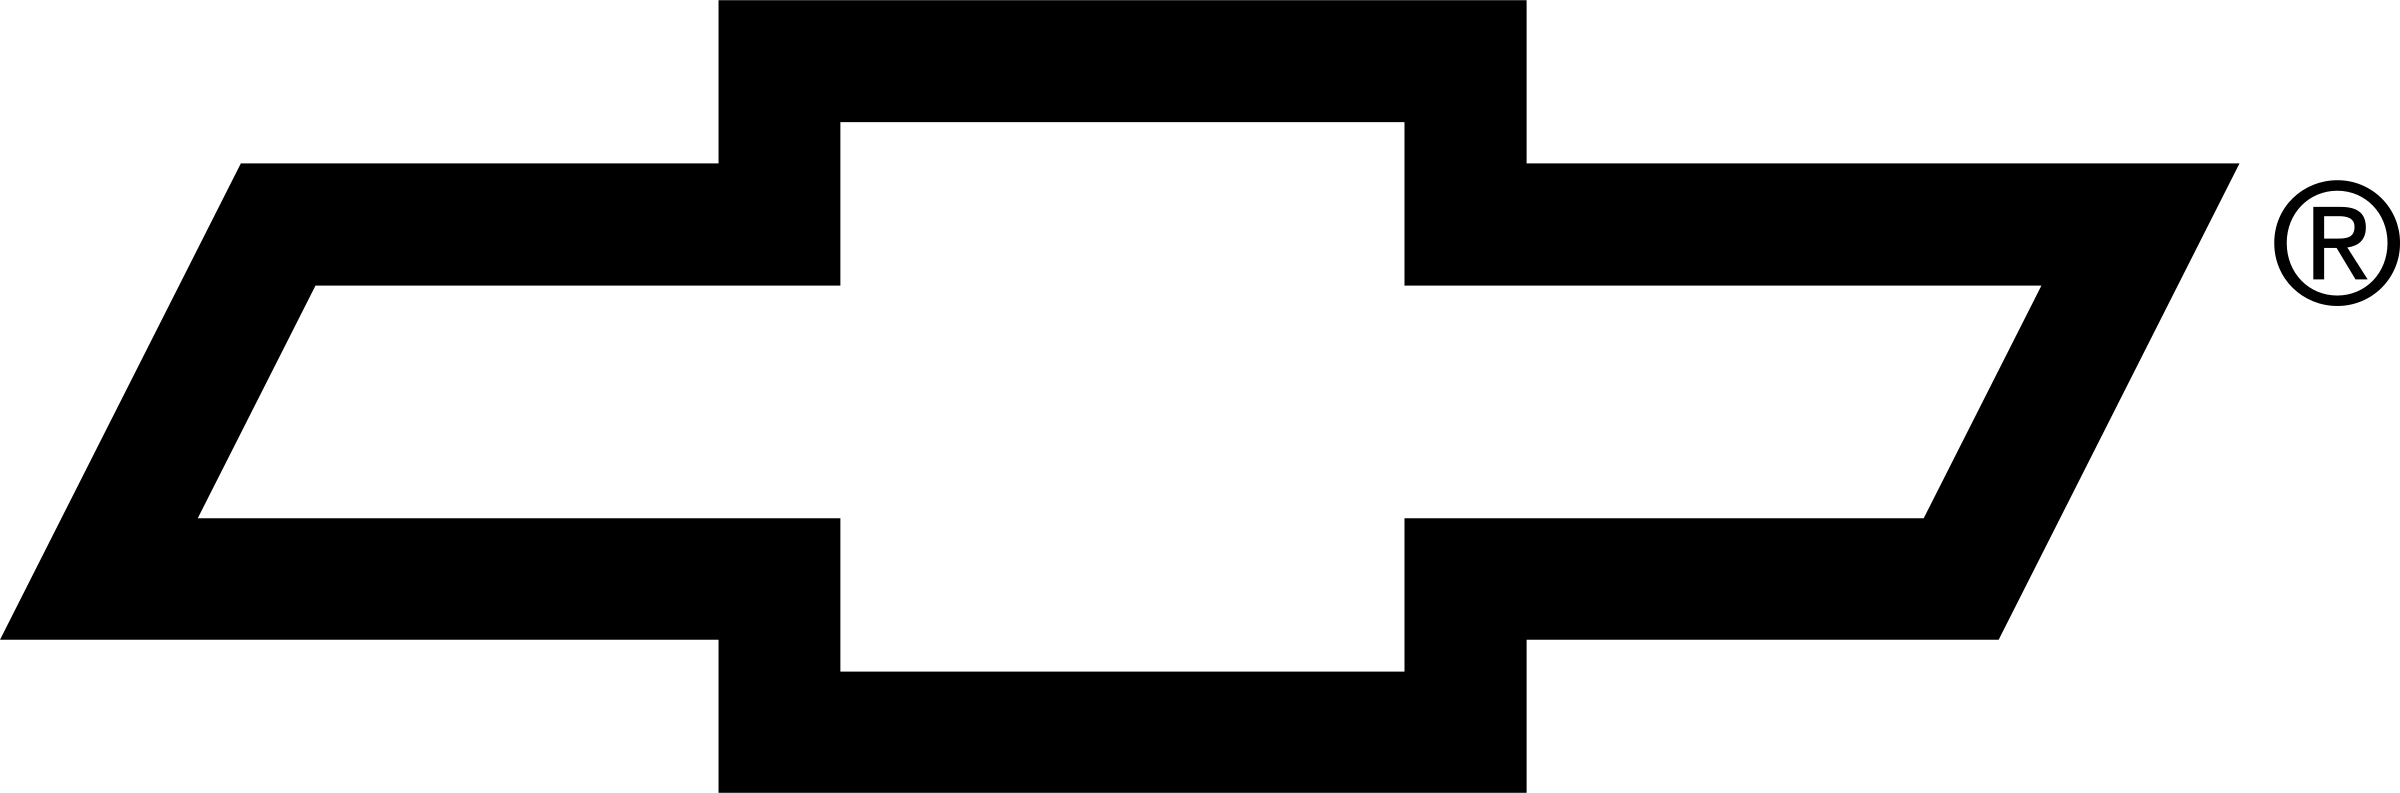 Transparent Chevy Logo